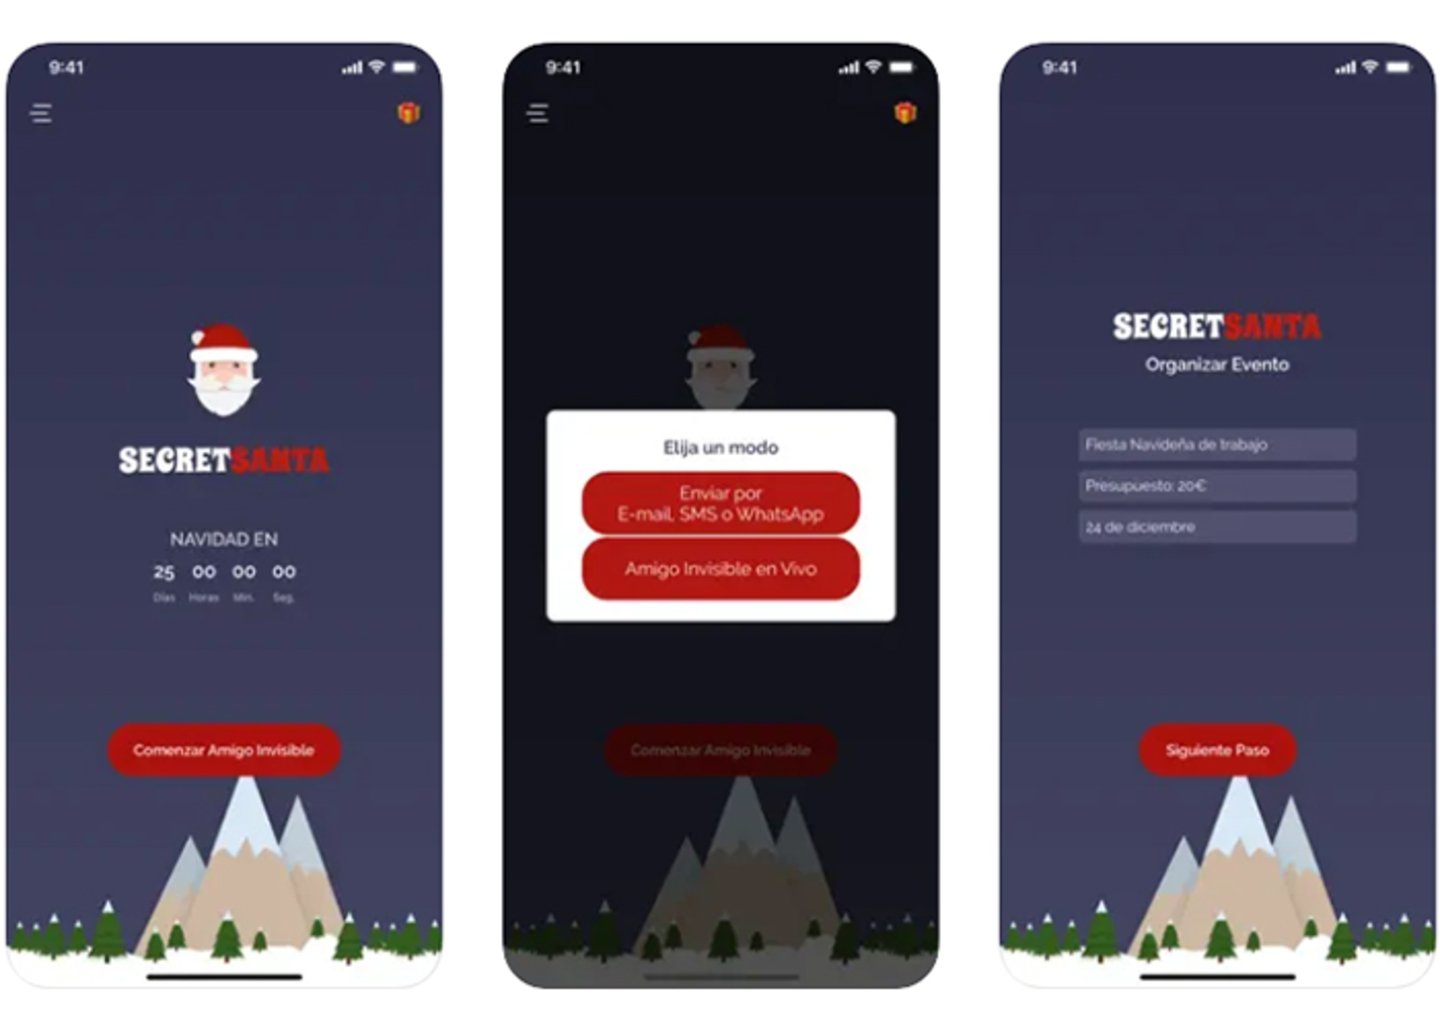 Celebra el espiritu navideño con la App Amigo Invisible - Secret Santa